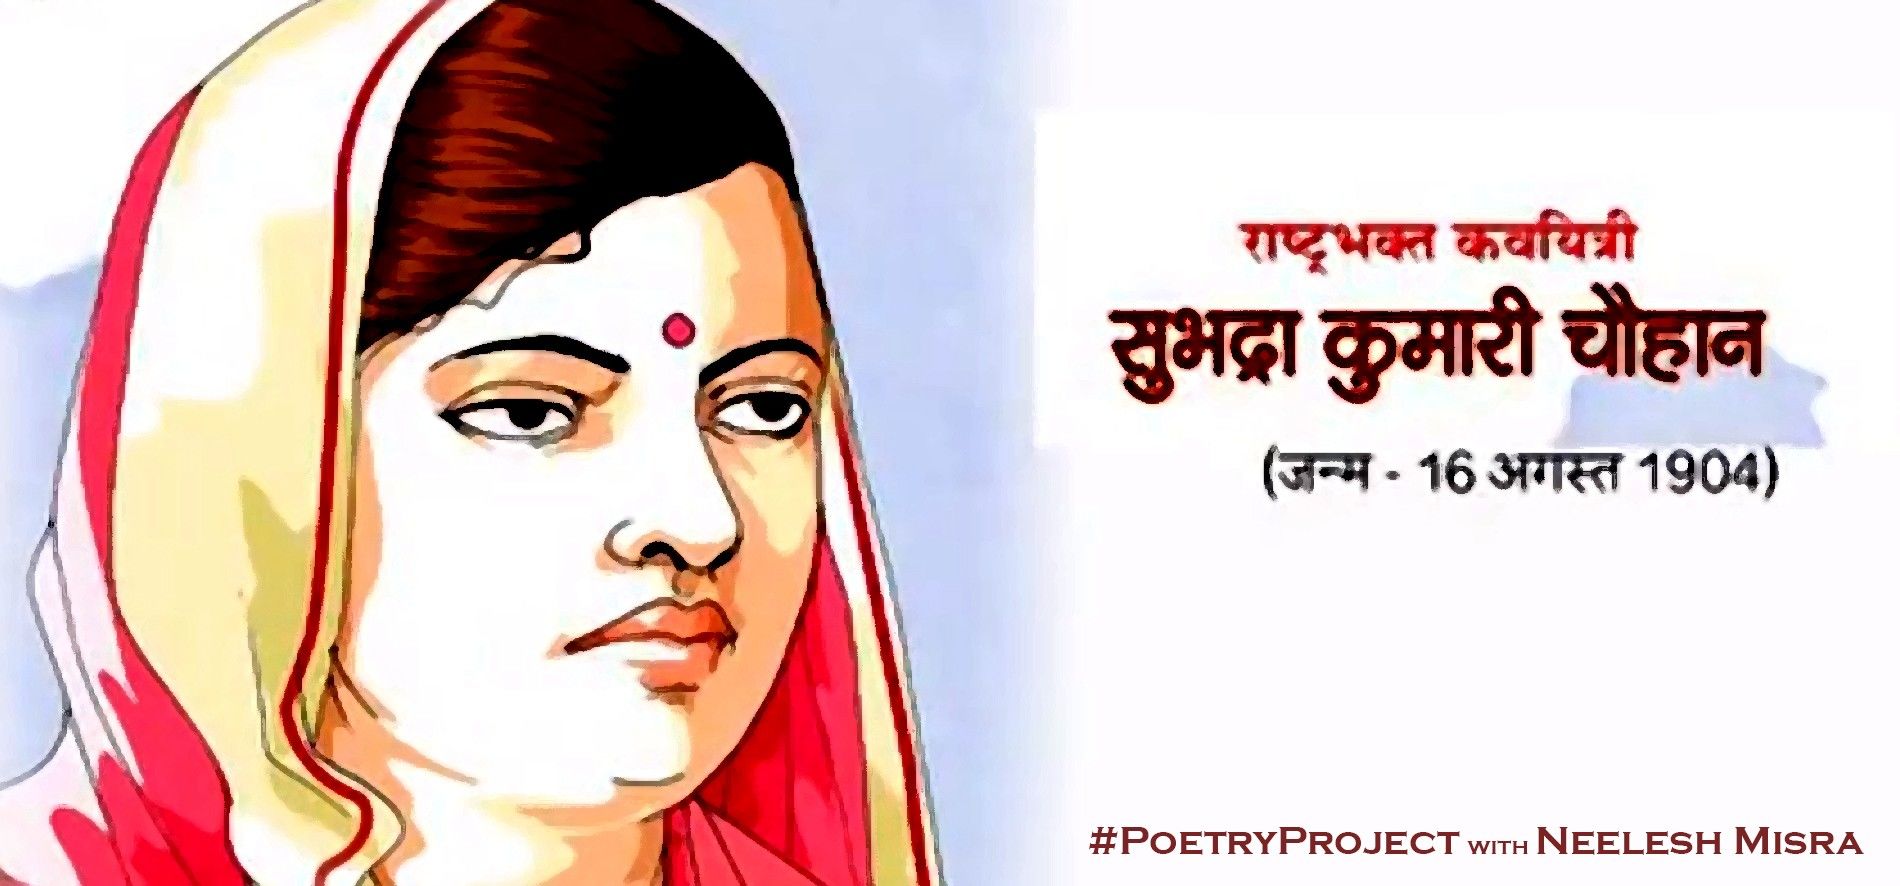 सुभद्राकुमारी चौहान की कालजयी कविता खूब लड़ी मर्दानी वह तो झांसी वाली रानी थी ... नीलेश मिसरा की आवाज में